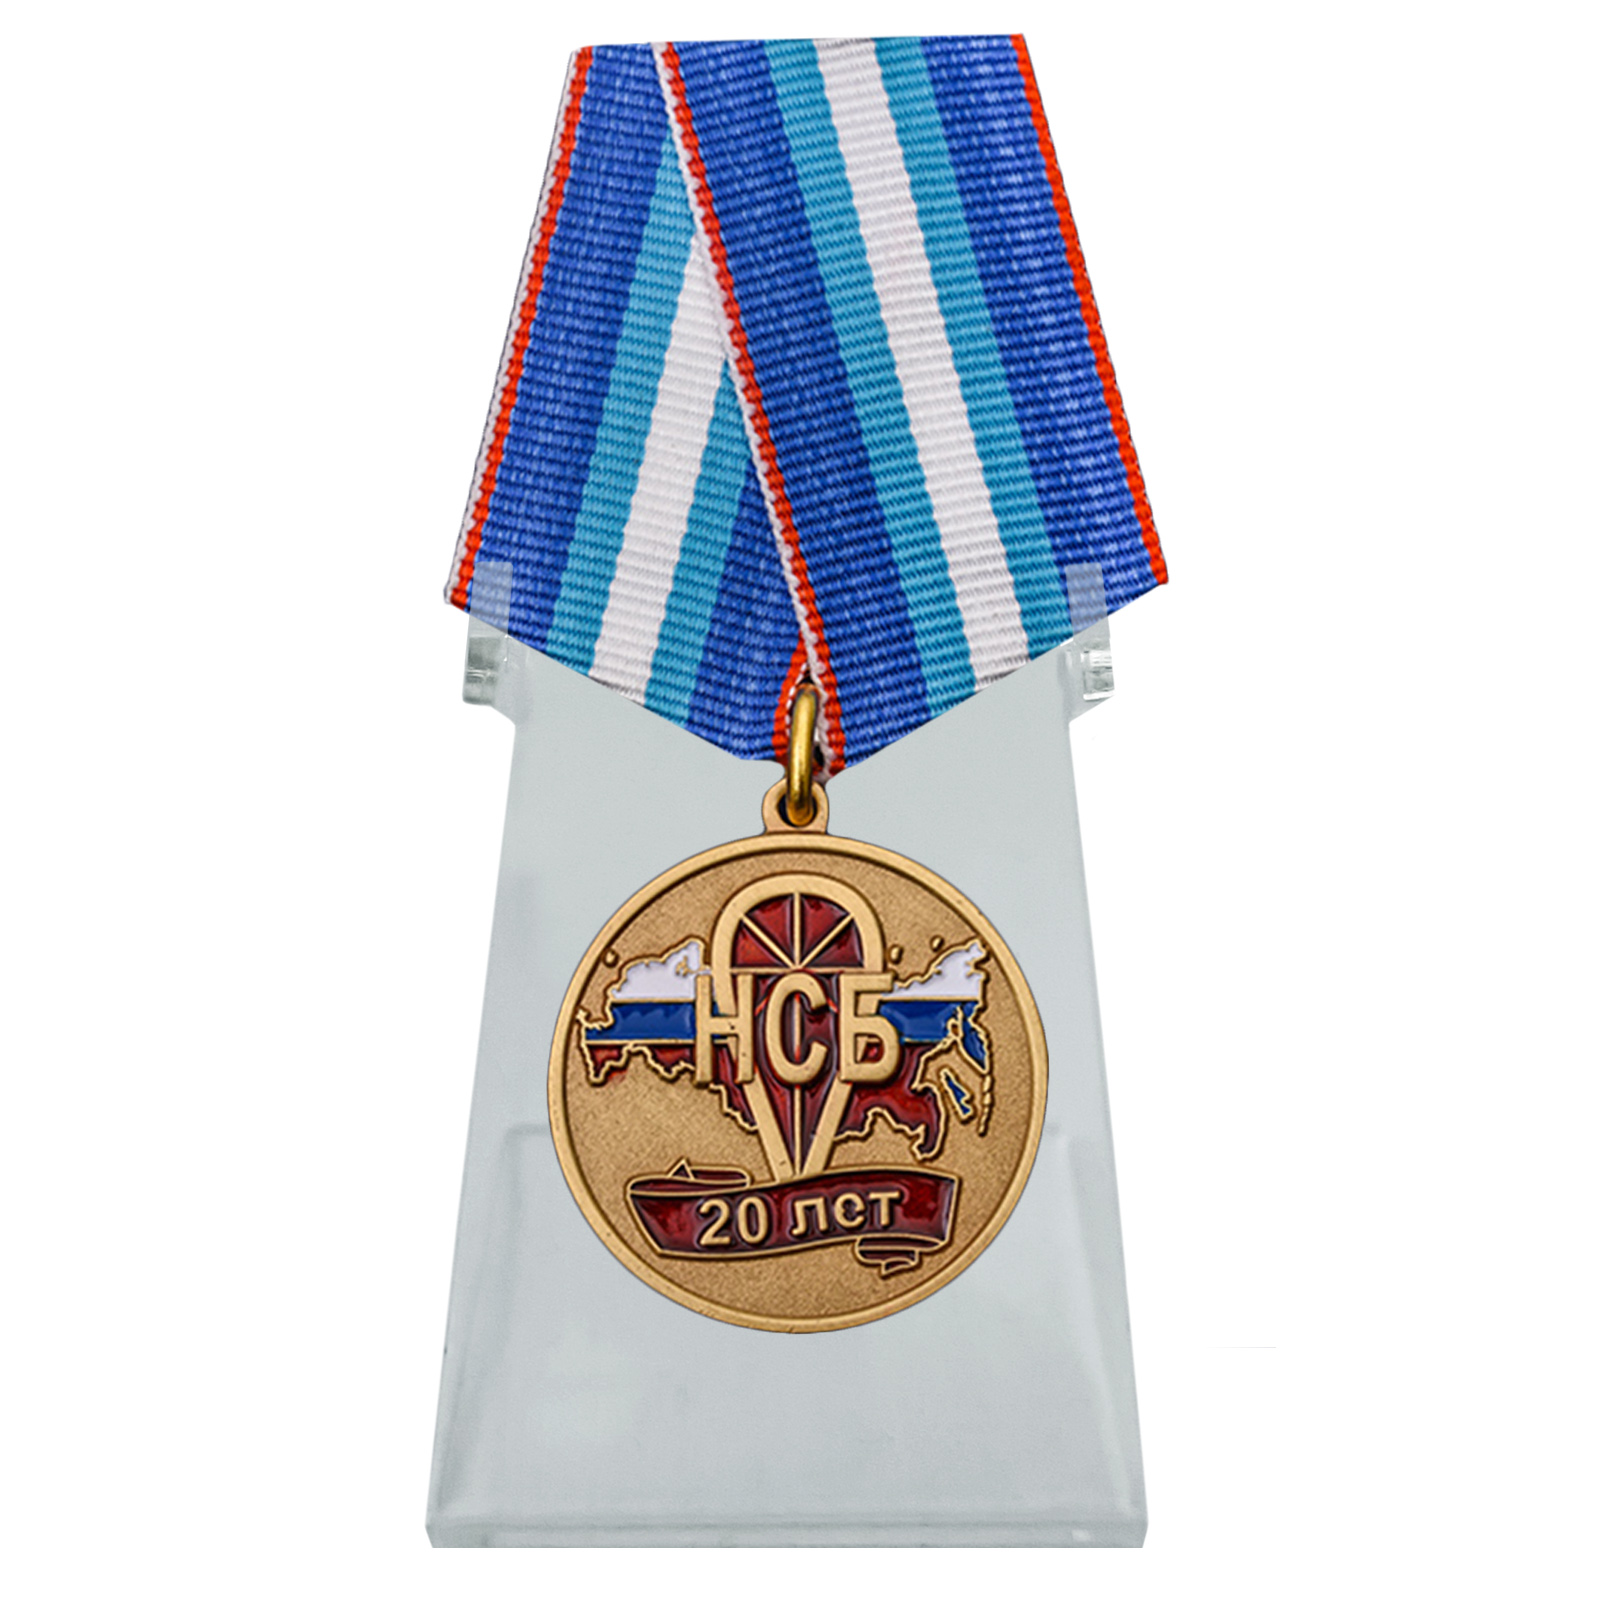 Медаль "20 лет НСБ" на подставке